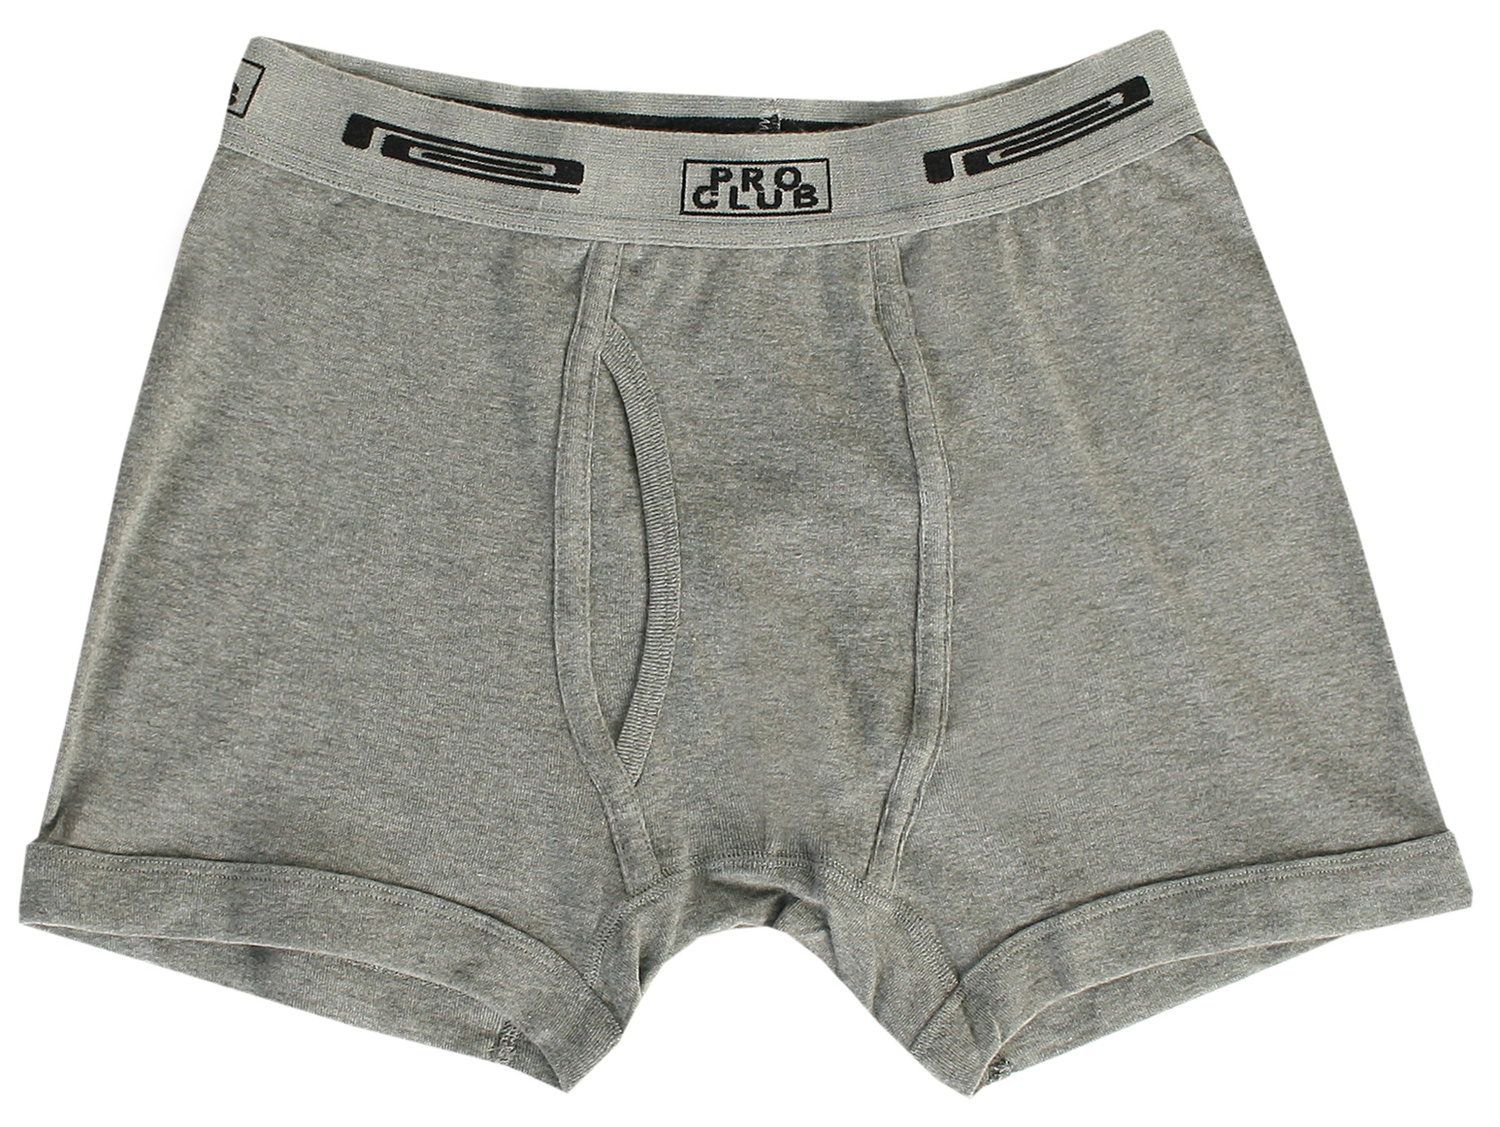 173 H.GRAY Comfort Boxer Brief (2-Pack) - Underwear